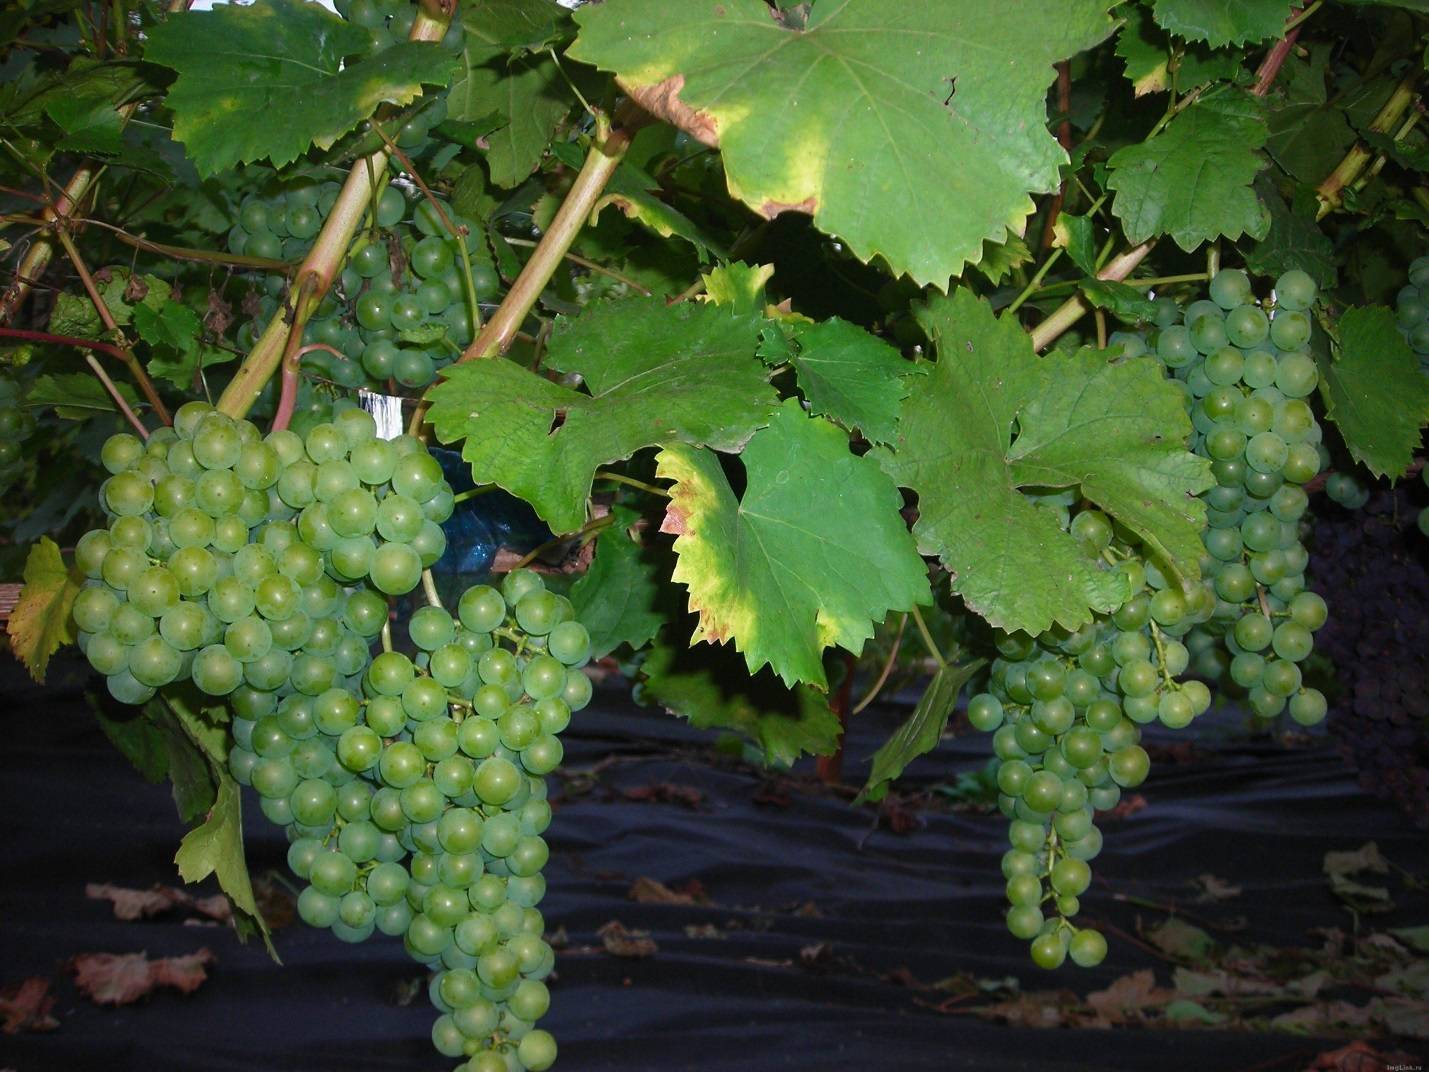 Виноград цитронный магарача: описание сорта и характеристики, выращивание